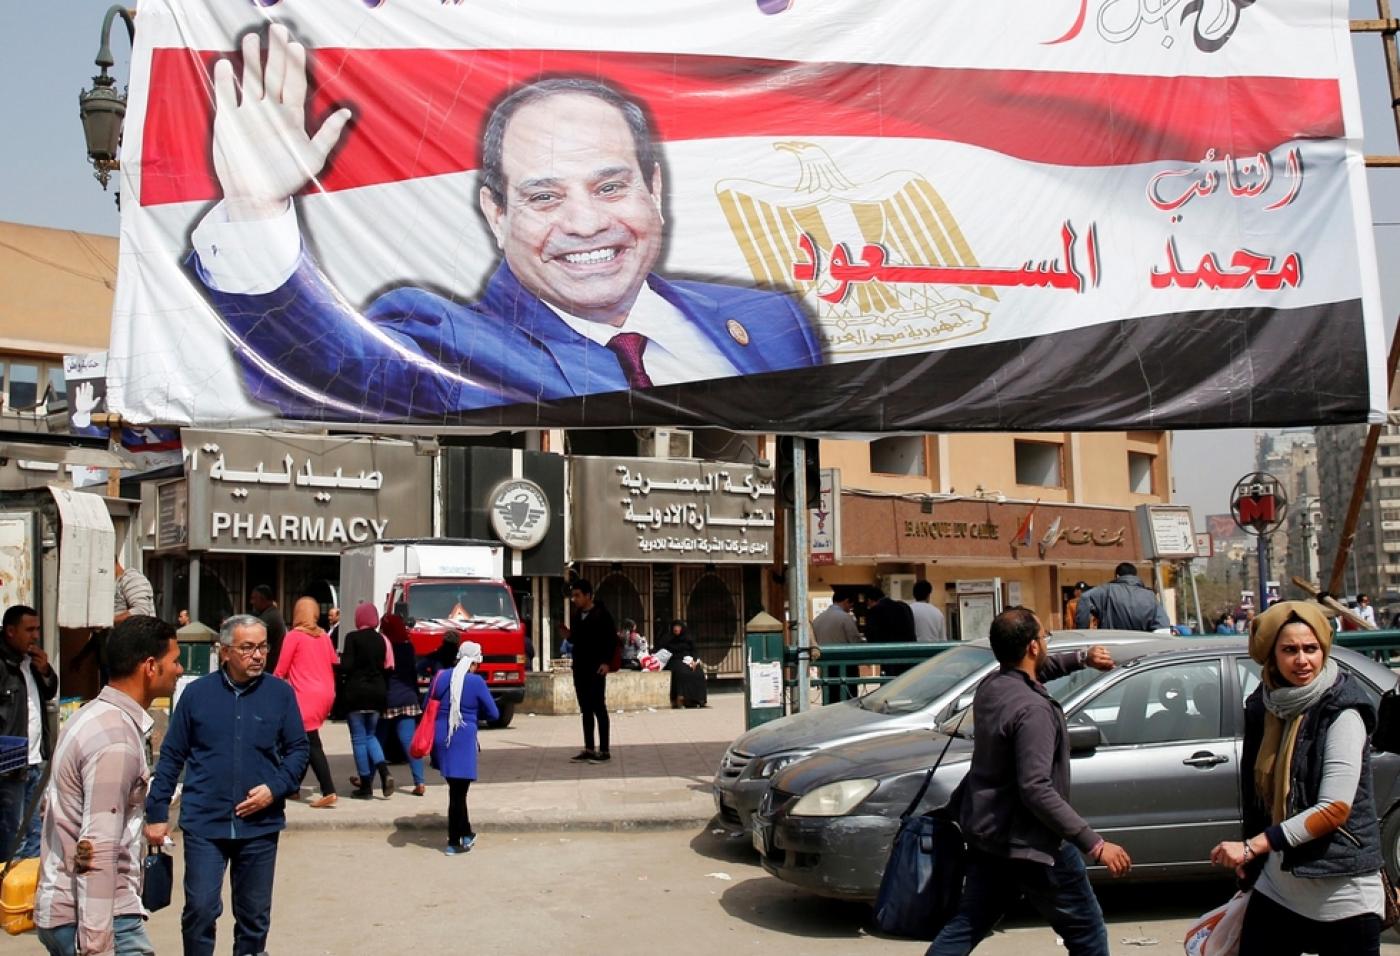 埃及塞西政变图片